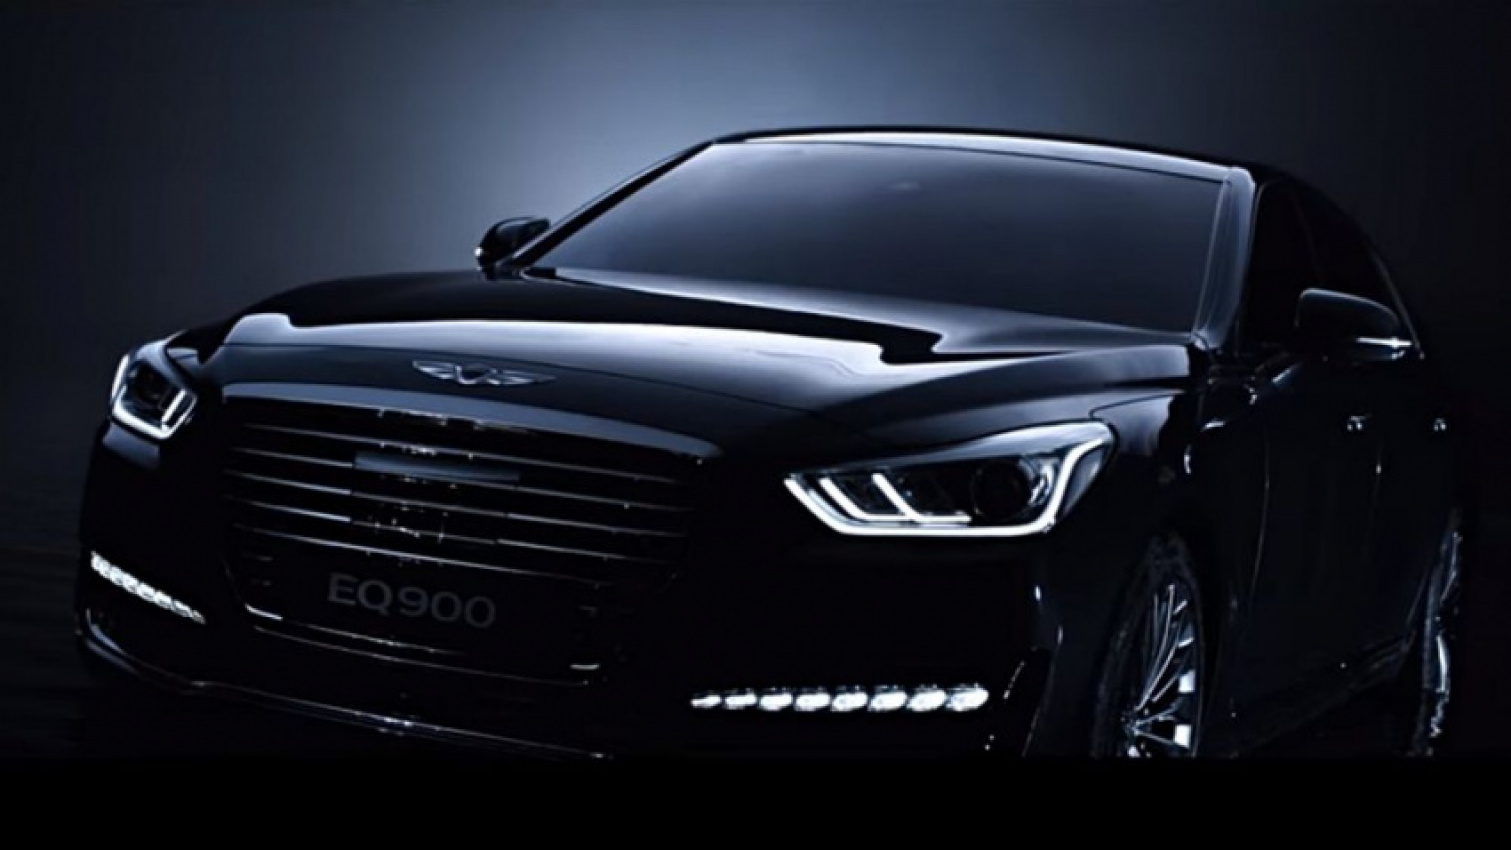 autos, cars, genesis, hyundai, autos hyundai, hyundai to debut genesis brand in china within three years, says exec